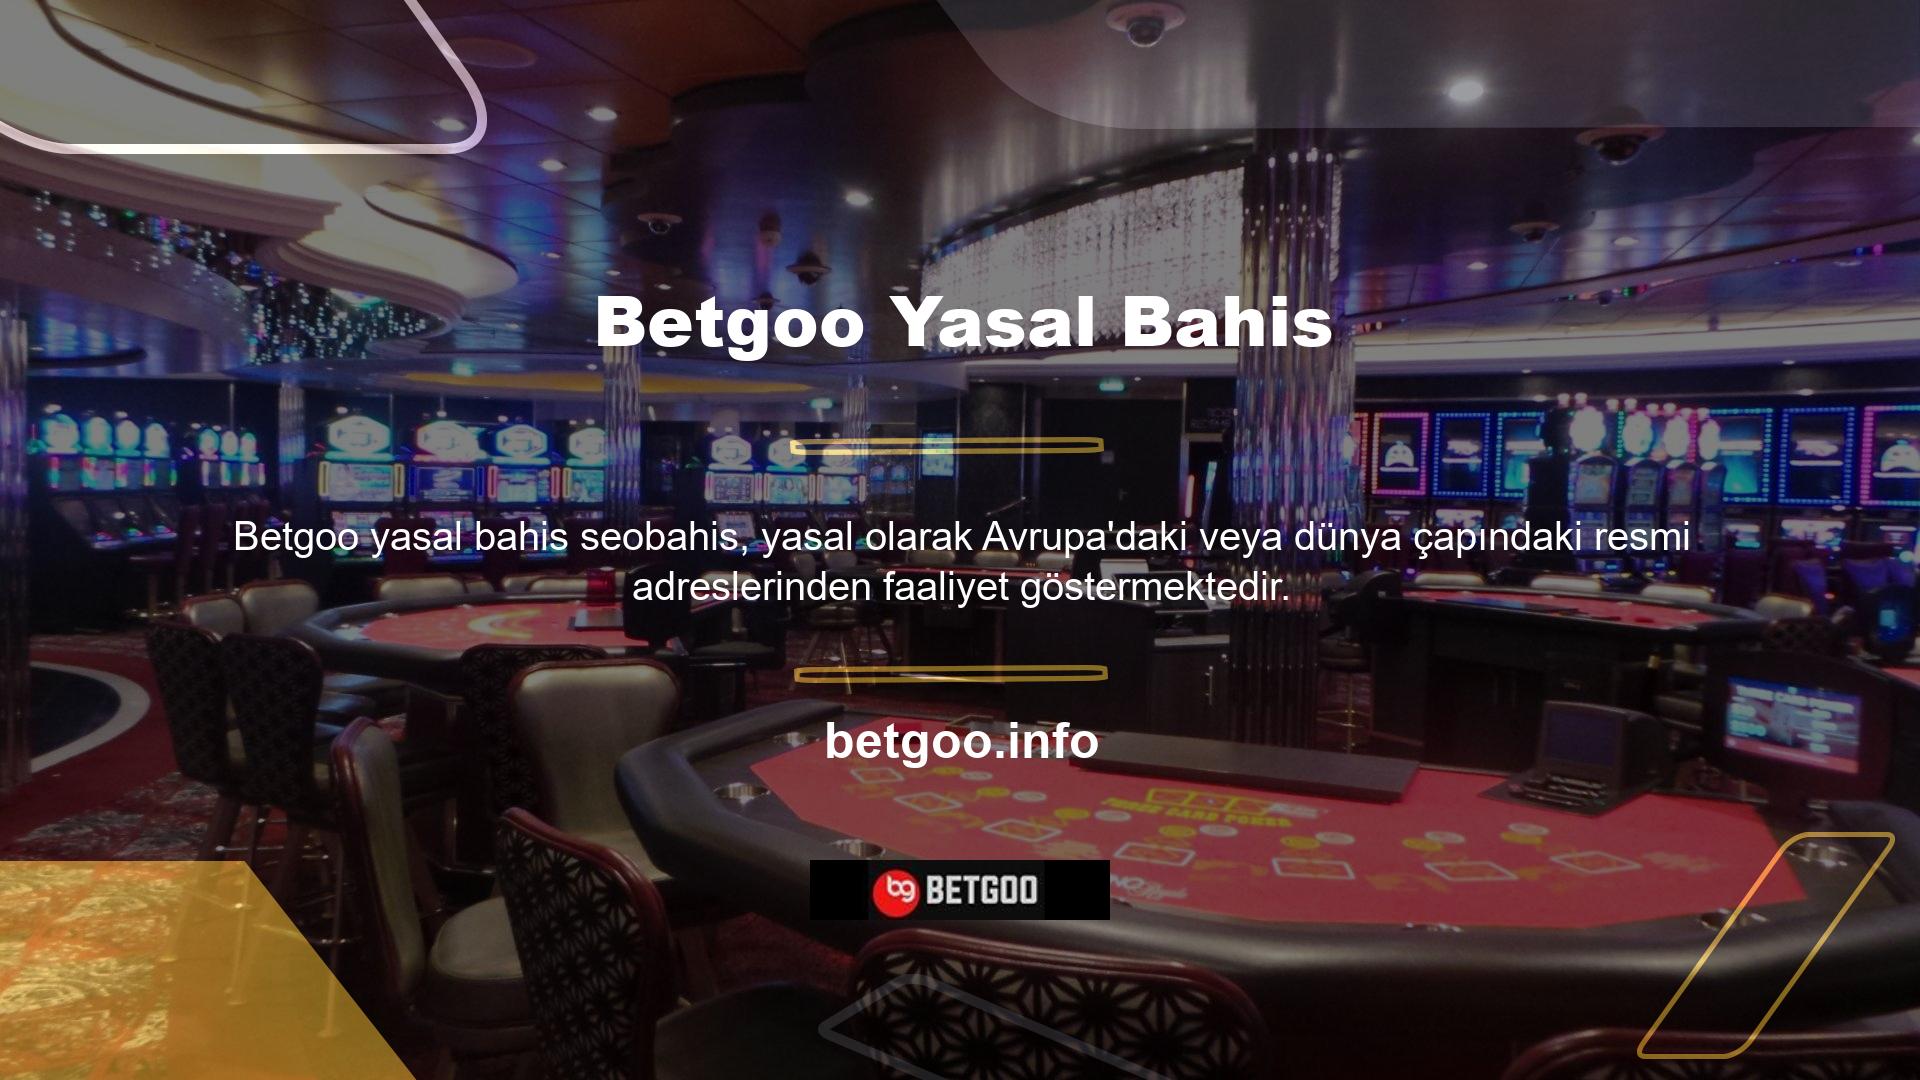 Türkiye'de özel şirketler tarafından oynanan casinonun yasa dışı olduğu bilinmektedir